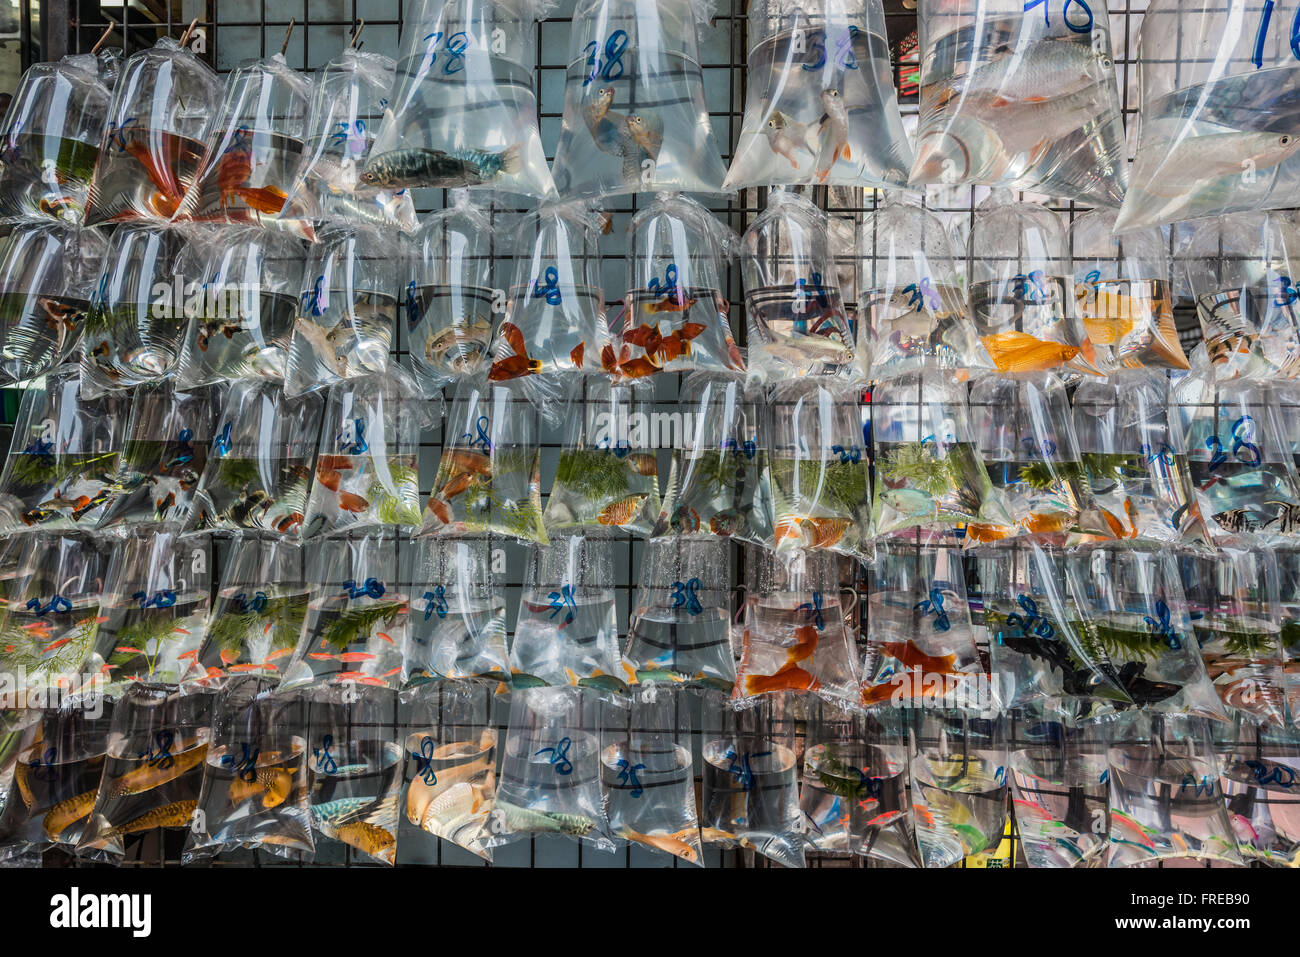 goldfish market Mong Kok Kowloon in Hong Kong Stock Photo